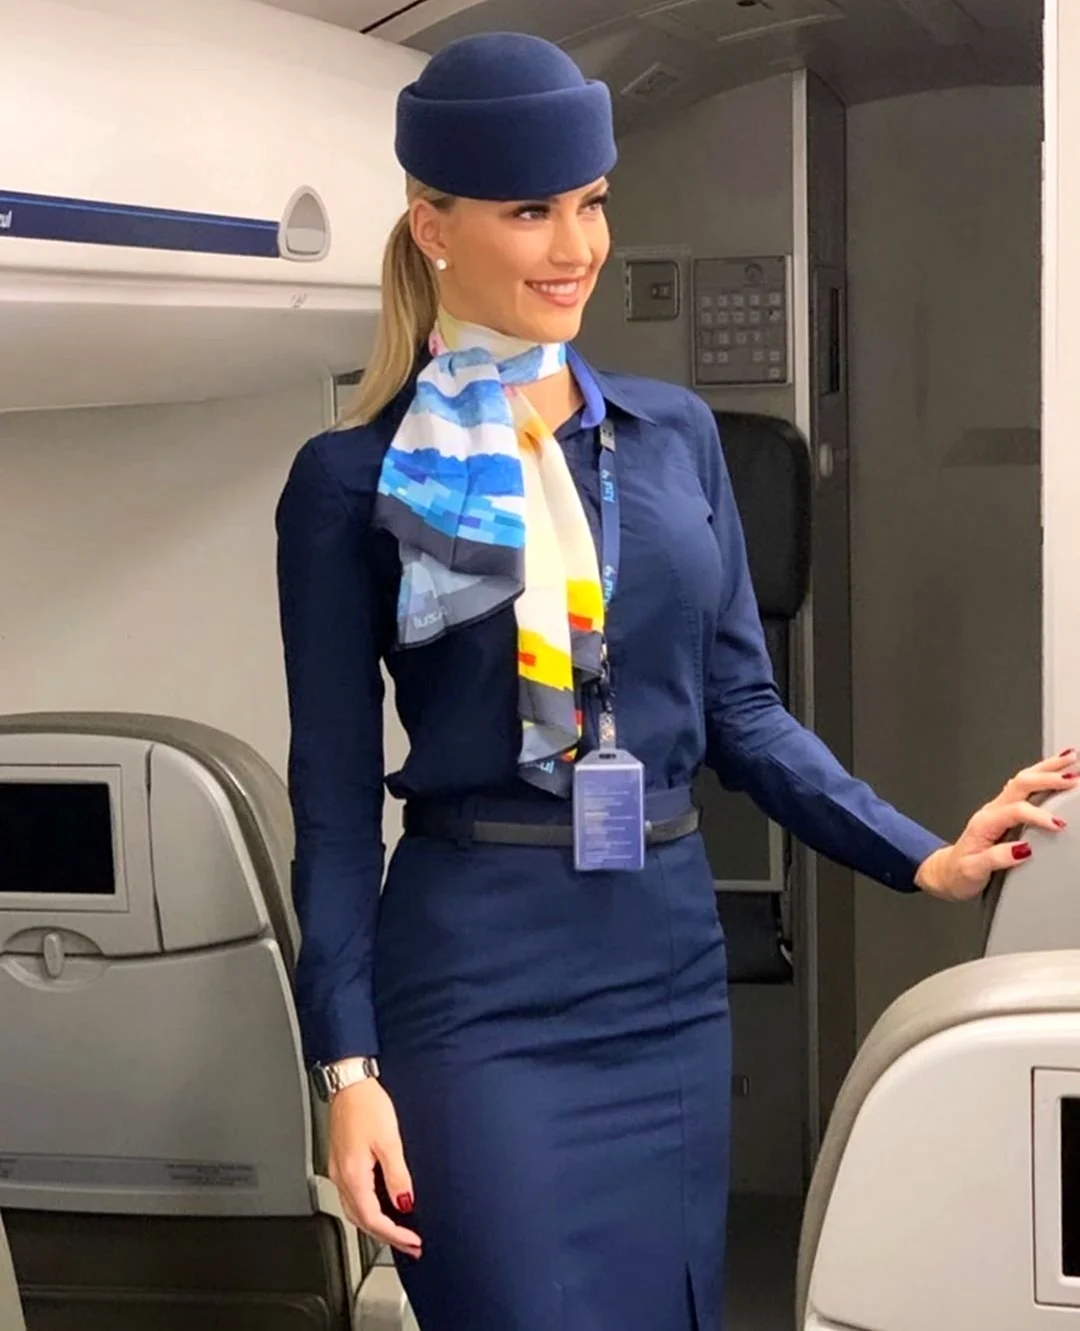 Анна 30 лет Flight attendant в Аэрофлот. Красивая девушка